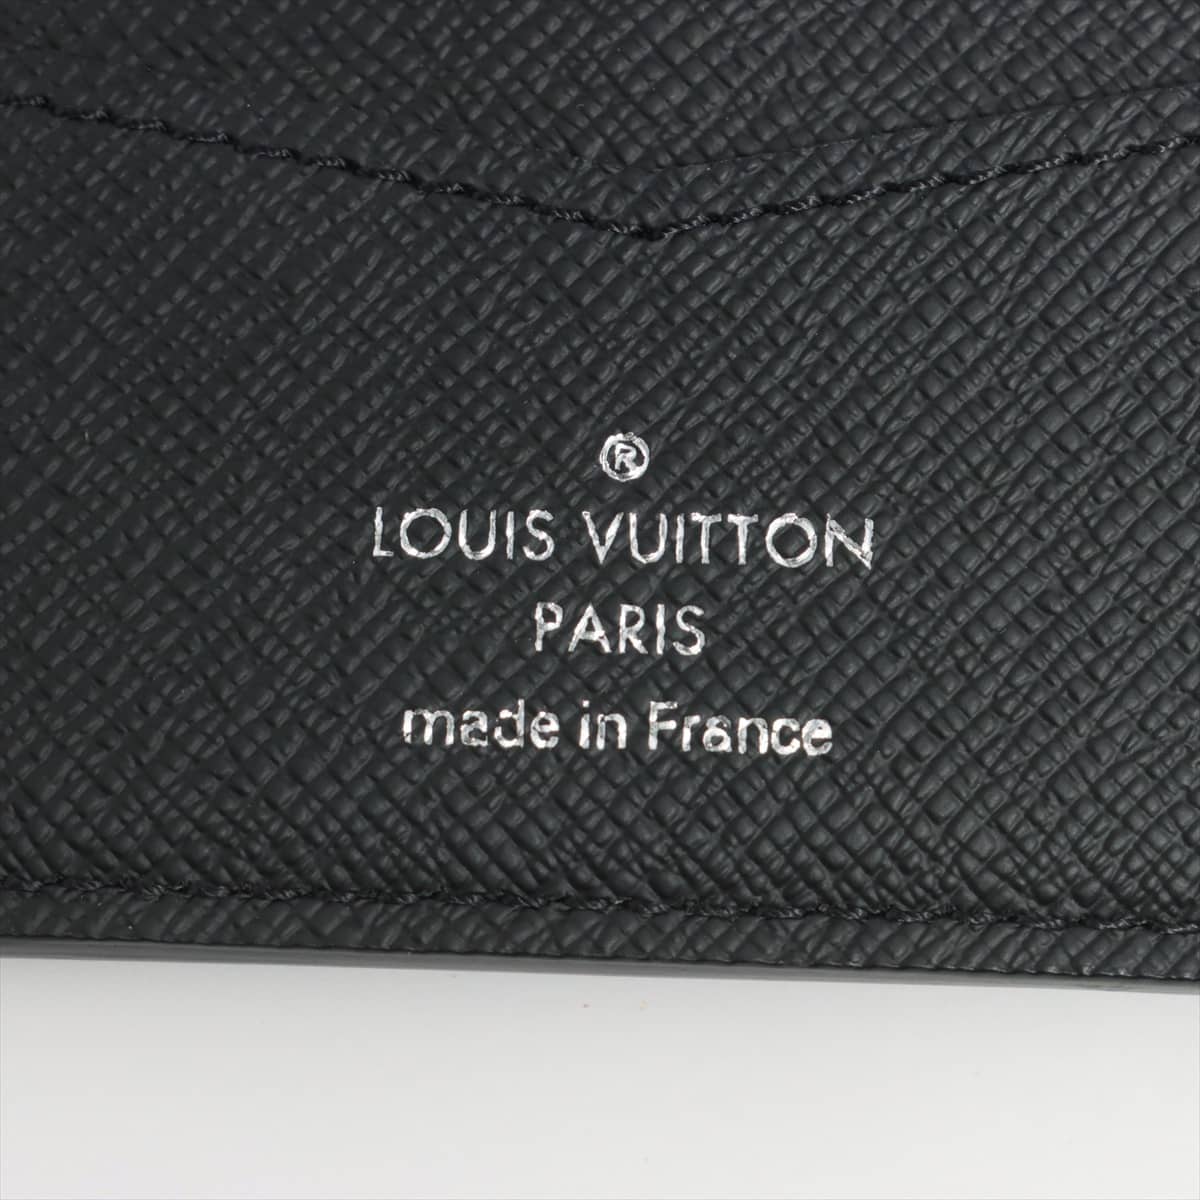 LOUIS VUITTON ポルトフォイユスレンダー 二つ折り財布 グレーコメントありがとうございます